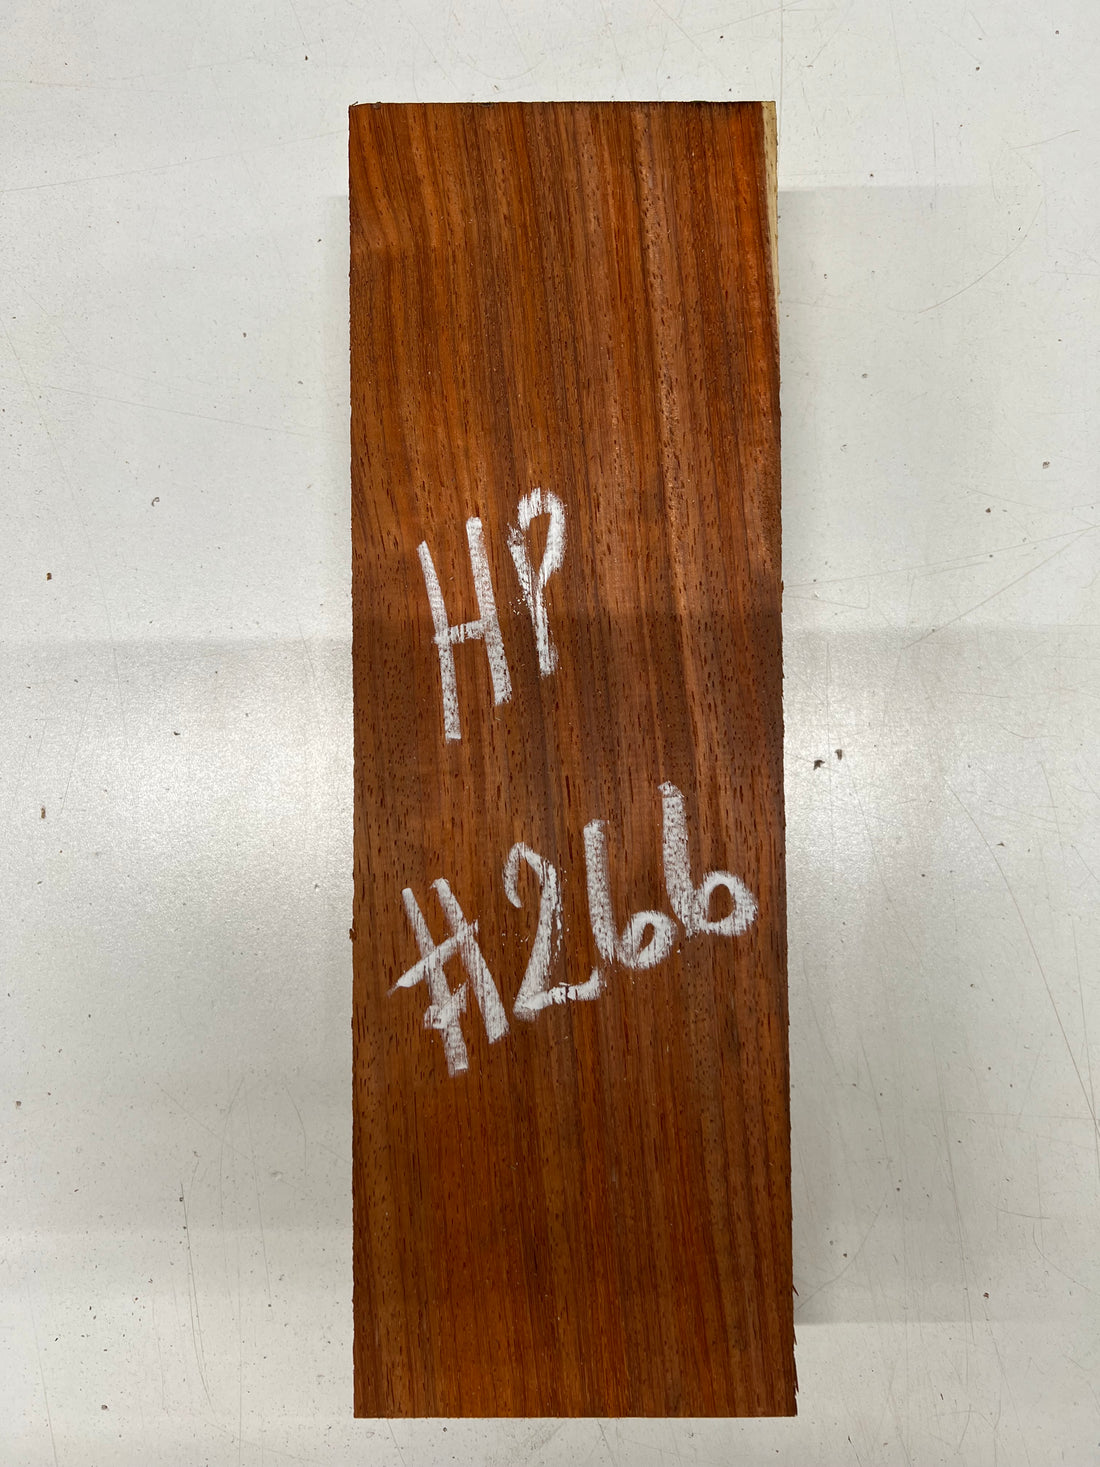 Padauk Lumber Board Wood Blank 12-1/2&quot;x 4&quot;x 2&quot; 